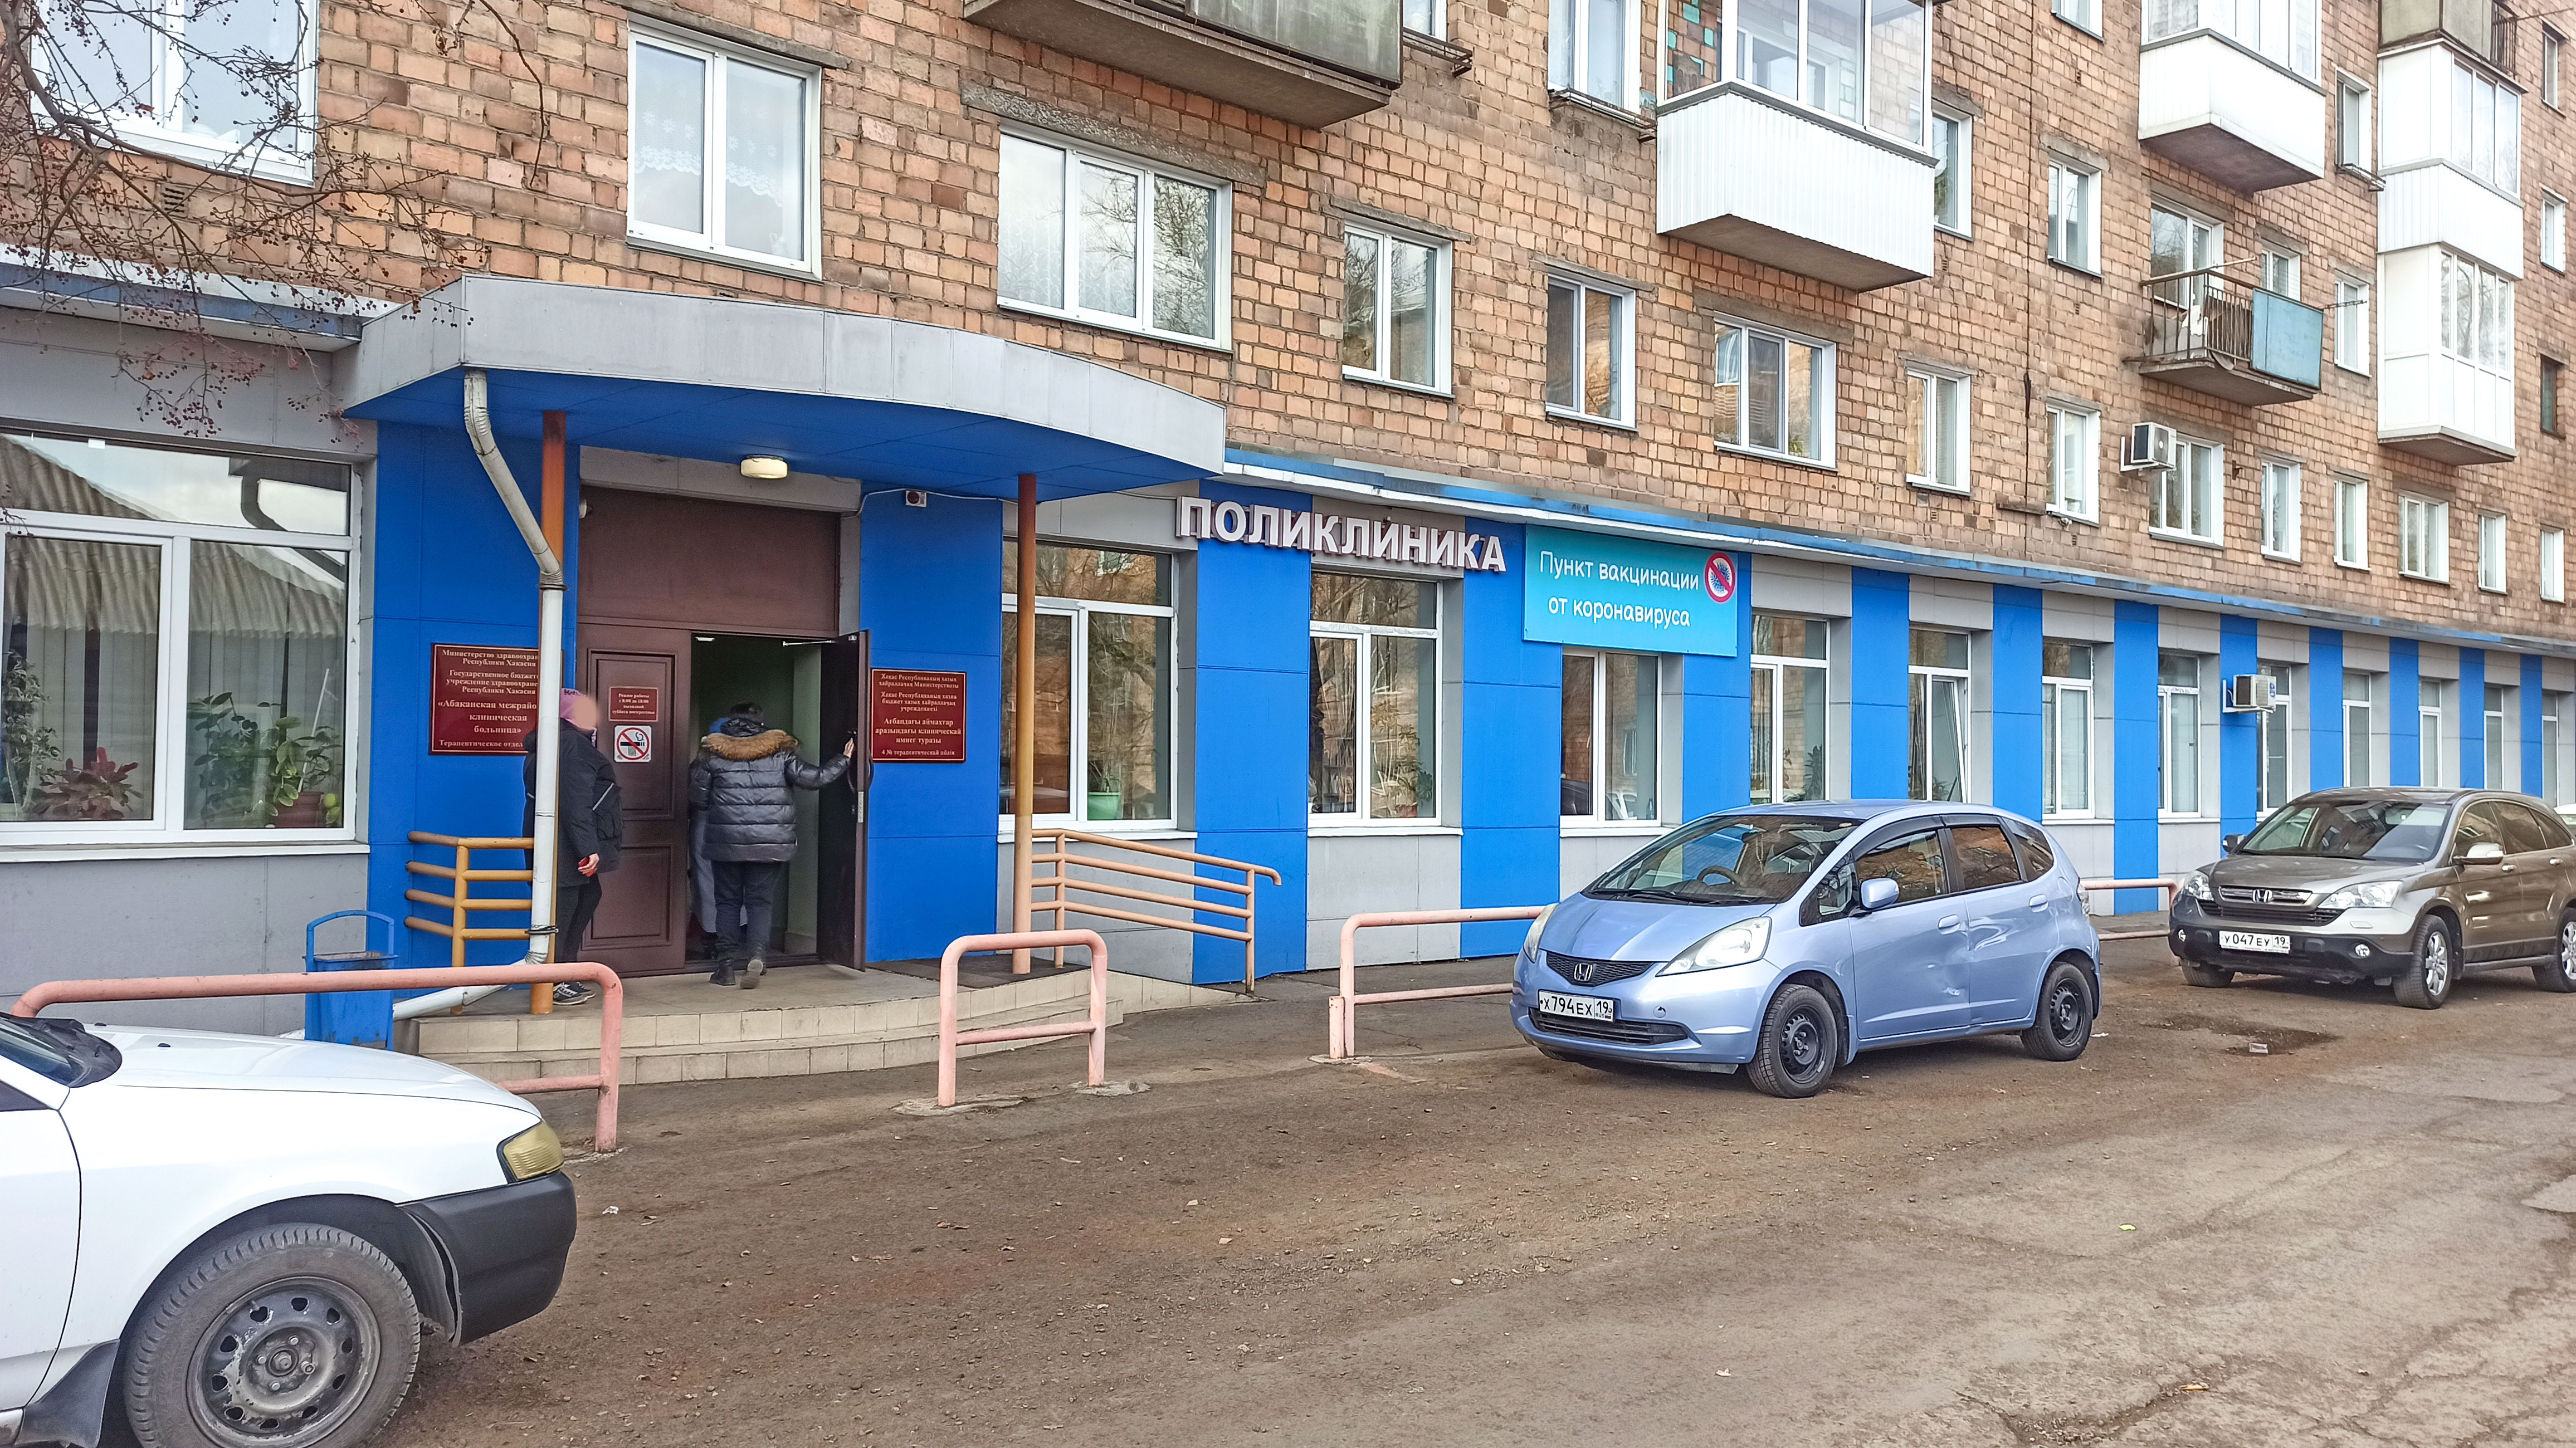 Поликлиника на Кравченко в г. Абакан.